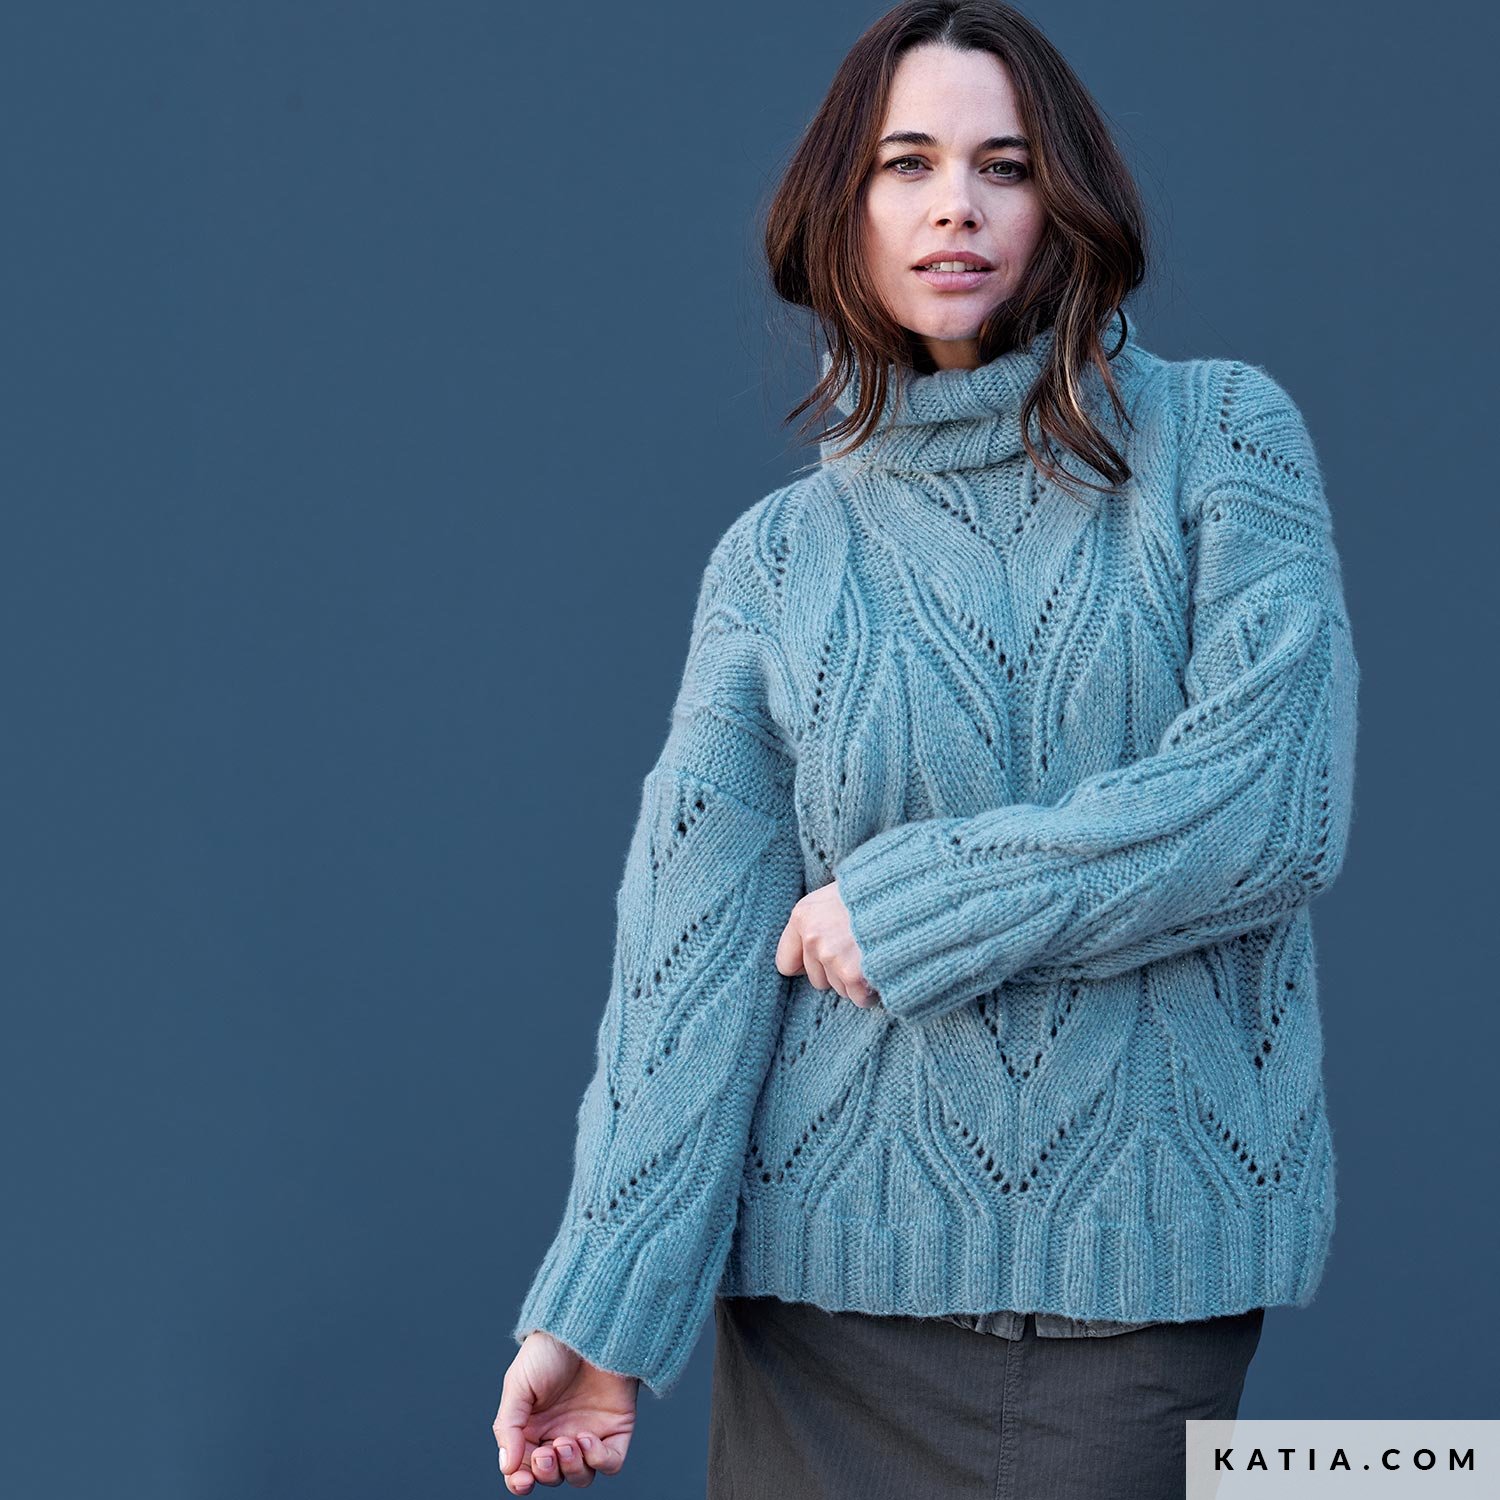 Billie Aran Knit Sweater Teal - Women's Sweaters